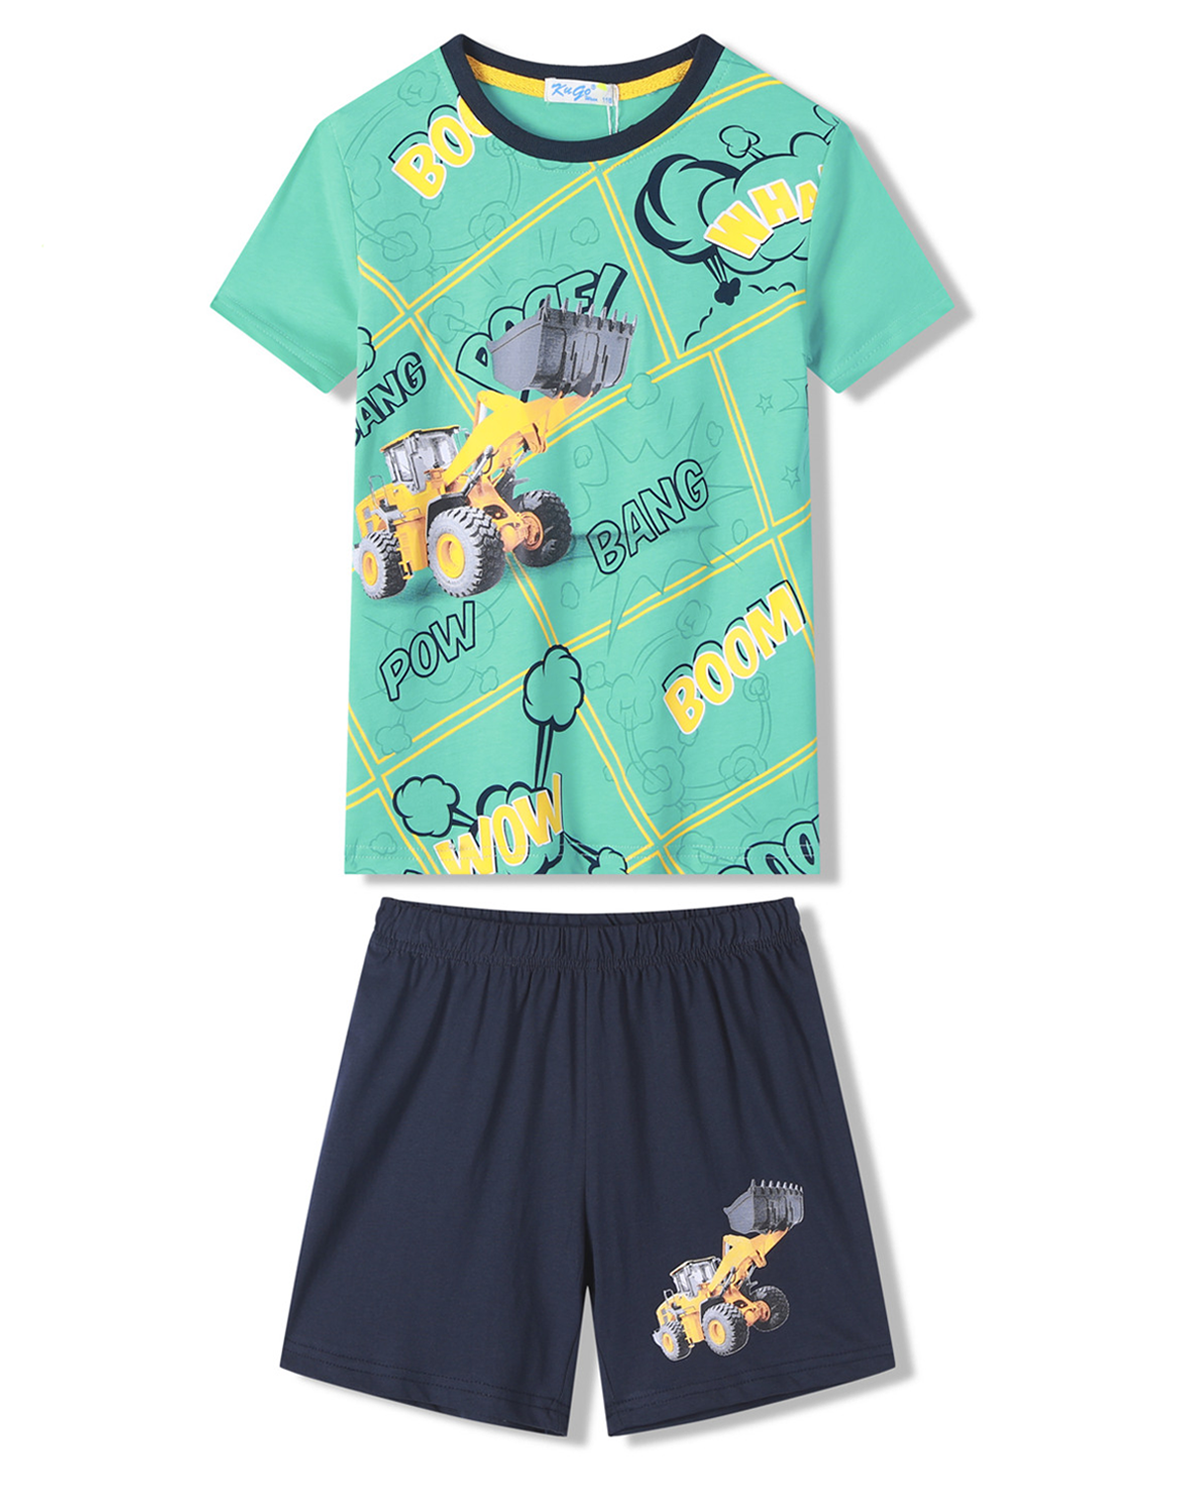 Chlapecké pyžamo - KUGO WT7310, zelinkavá Barva: Zelinkavá, Velikost: 110